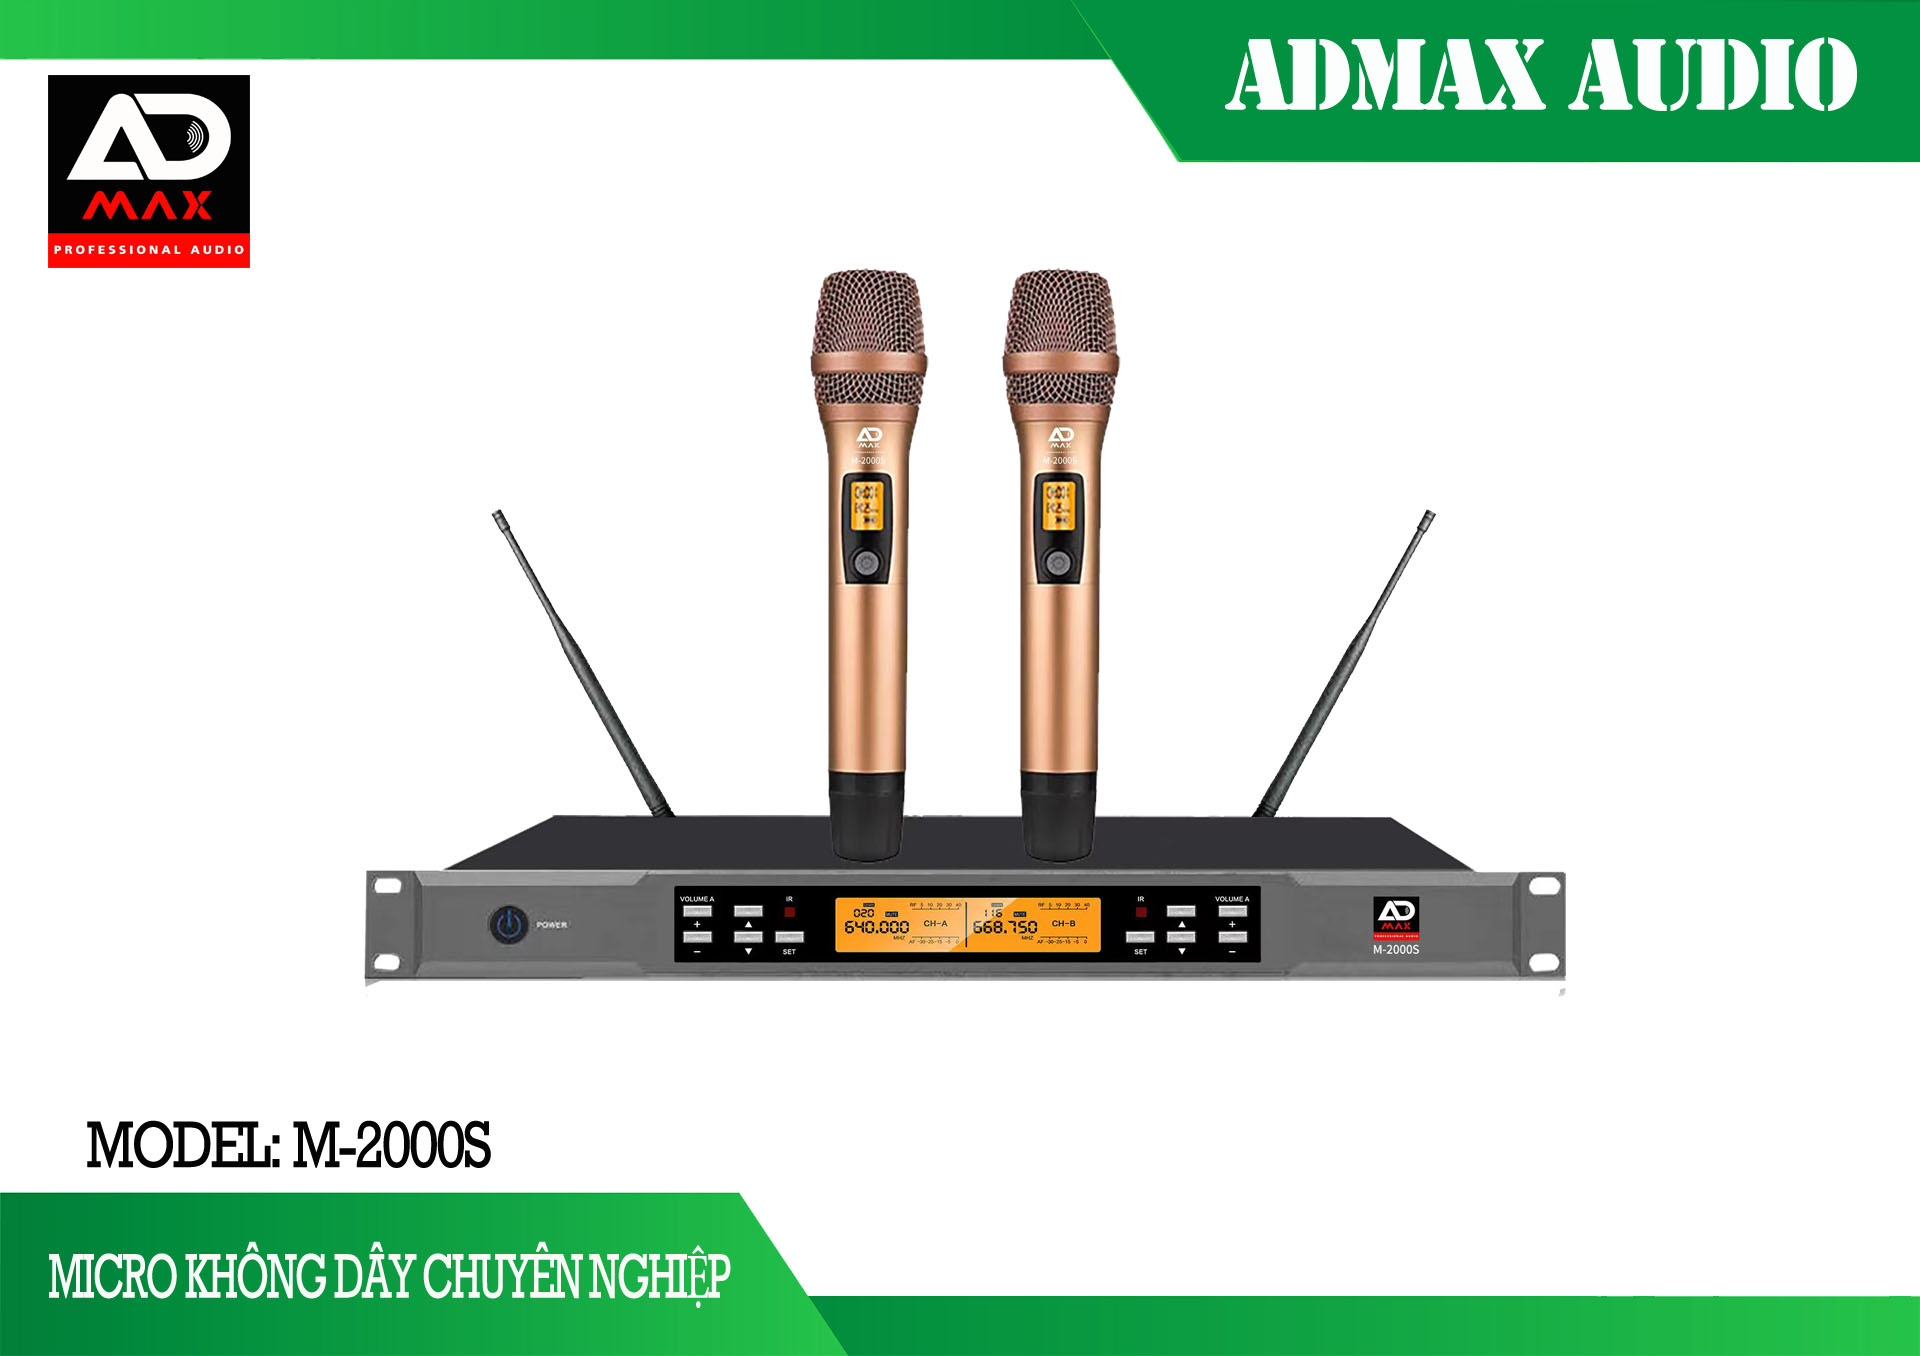 Vang Cơ ADMax X8 Pro